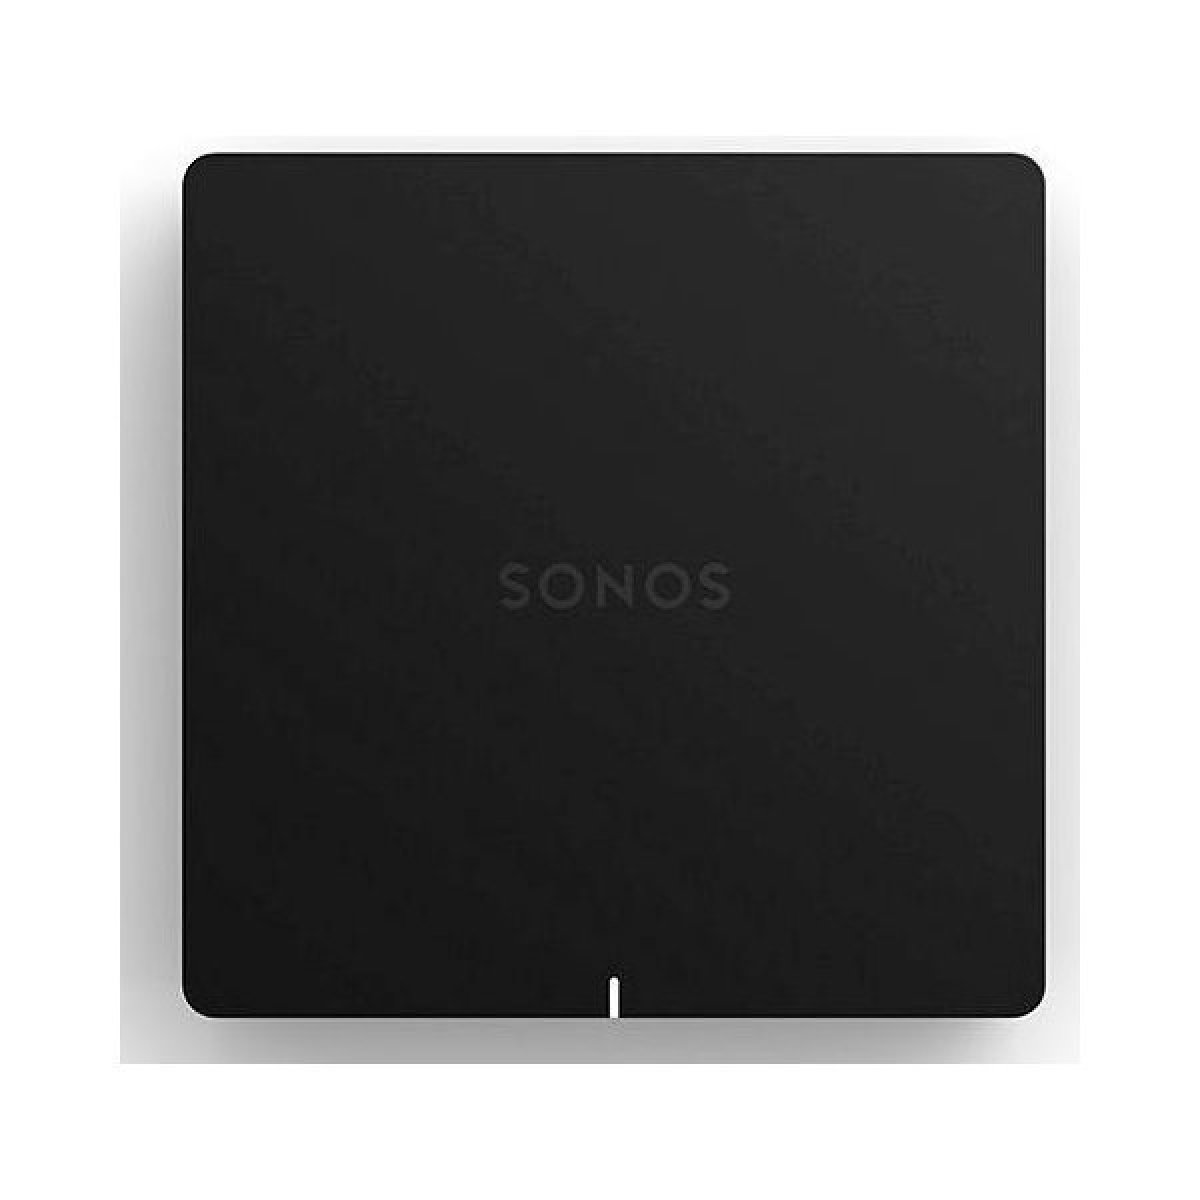 Apple Airplay 2 a Sonos